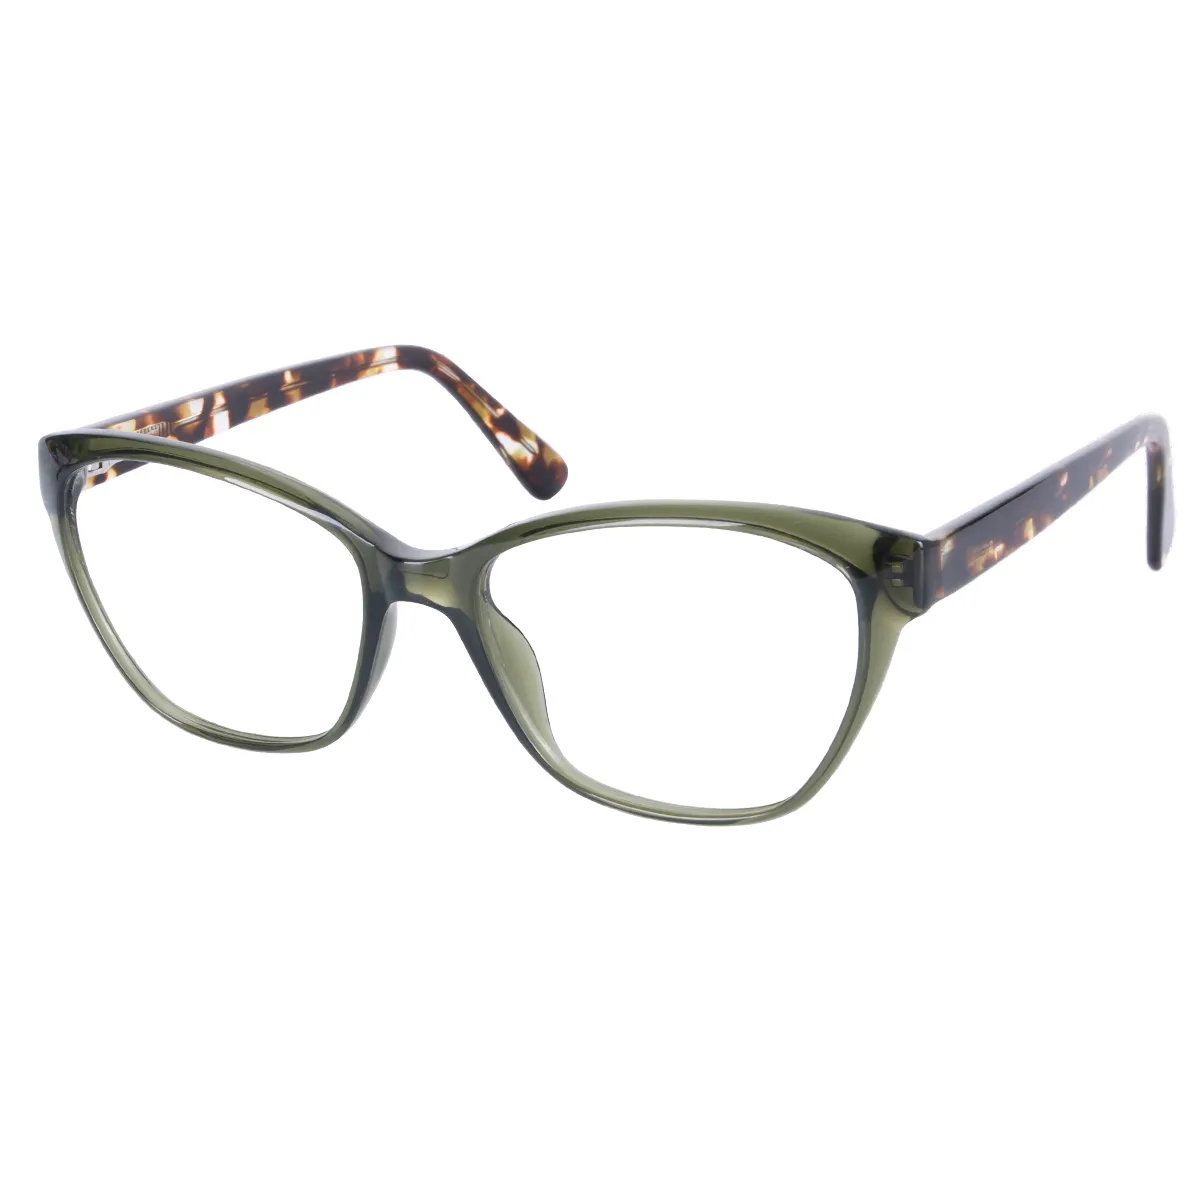 Latte - Cat-eye Green-Tortoiseshell Glasses for Women